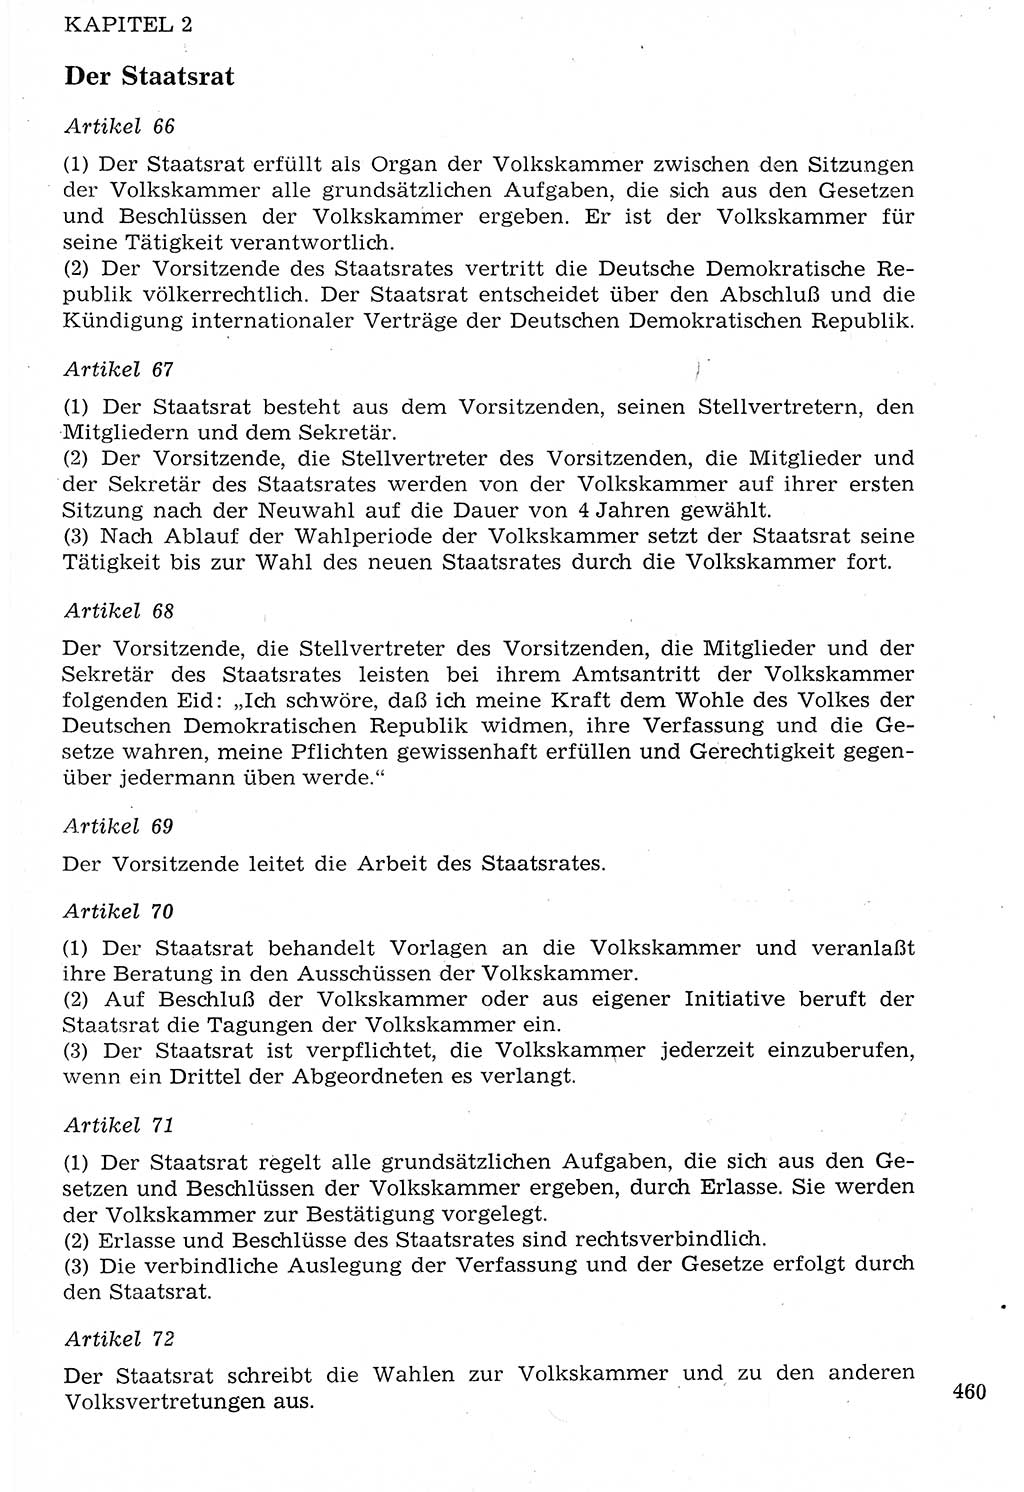 Staat und Recht (StuR), 17. Jahrgang [Deutsche Demokratische Republik (DDR)] 1968, Seite 460 (StuR DDR 1968, S. 460)